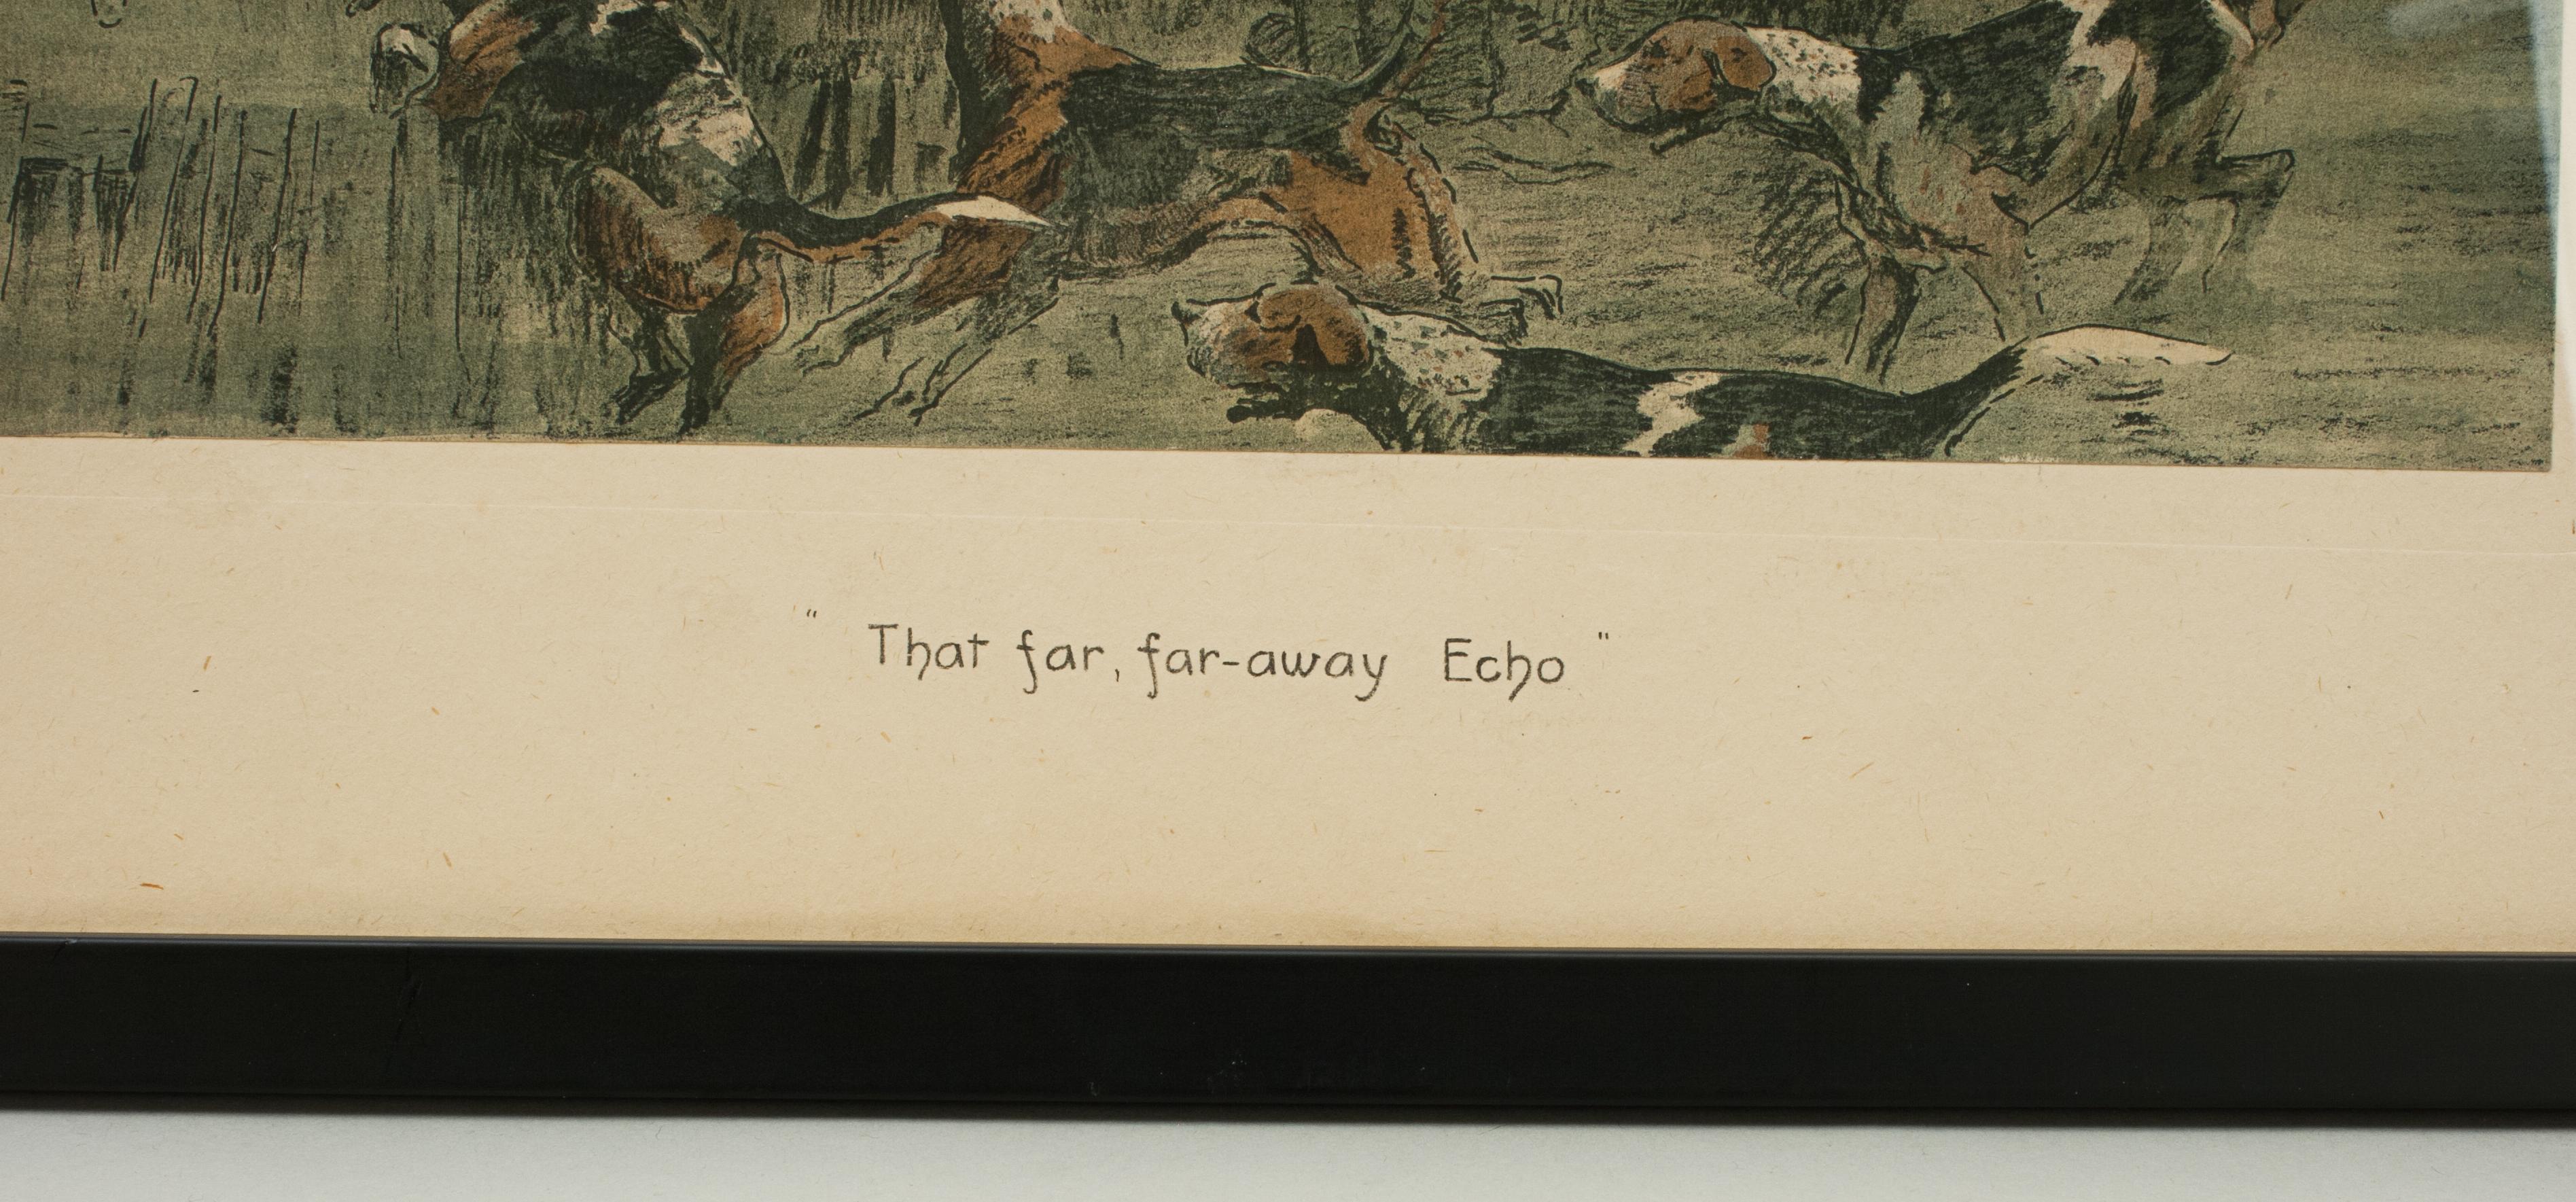 British WWI Military Print, That Far, Far-away Echo by Snaffles